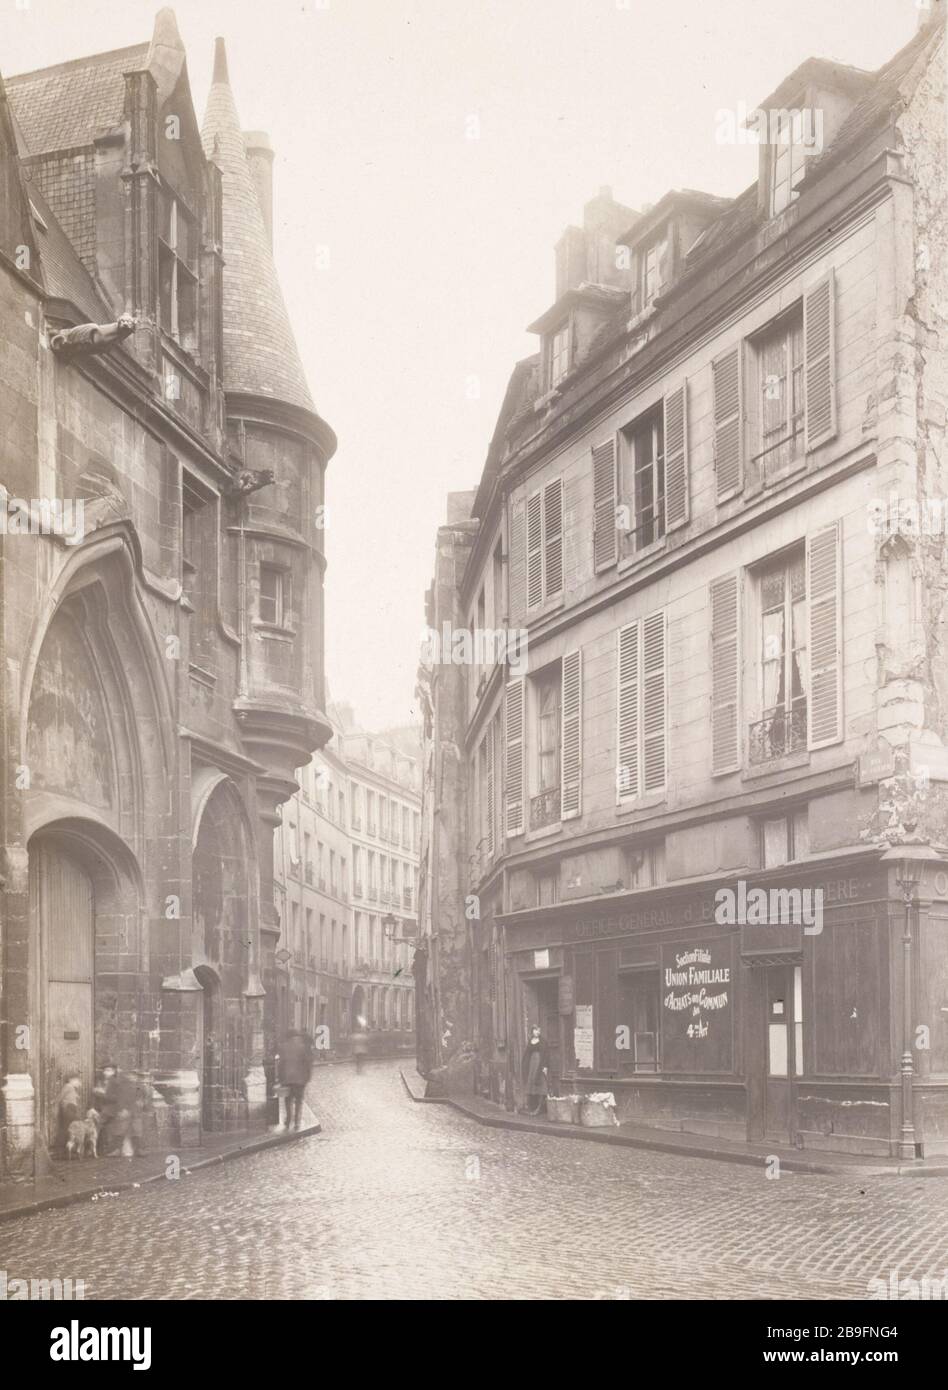 1 RUE DU FIGUIER 1 Rue du Figuier. Paris (IVème arr.). Photographie de Charles Lansiaux (1855-1939). Paris, musée Carnavalet. Stockfoto